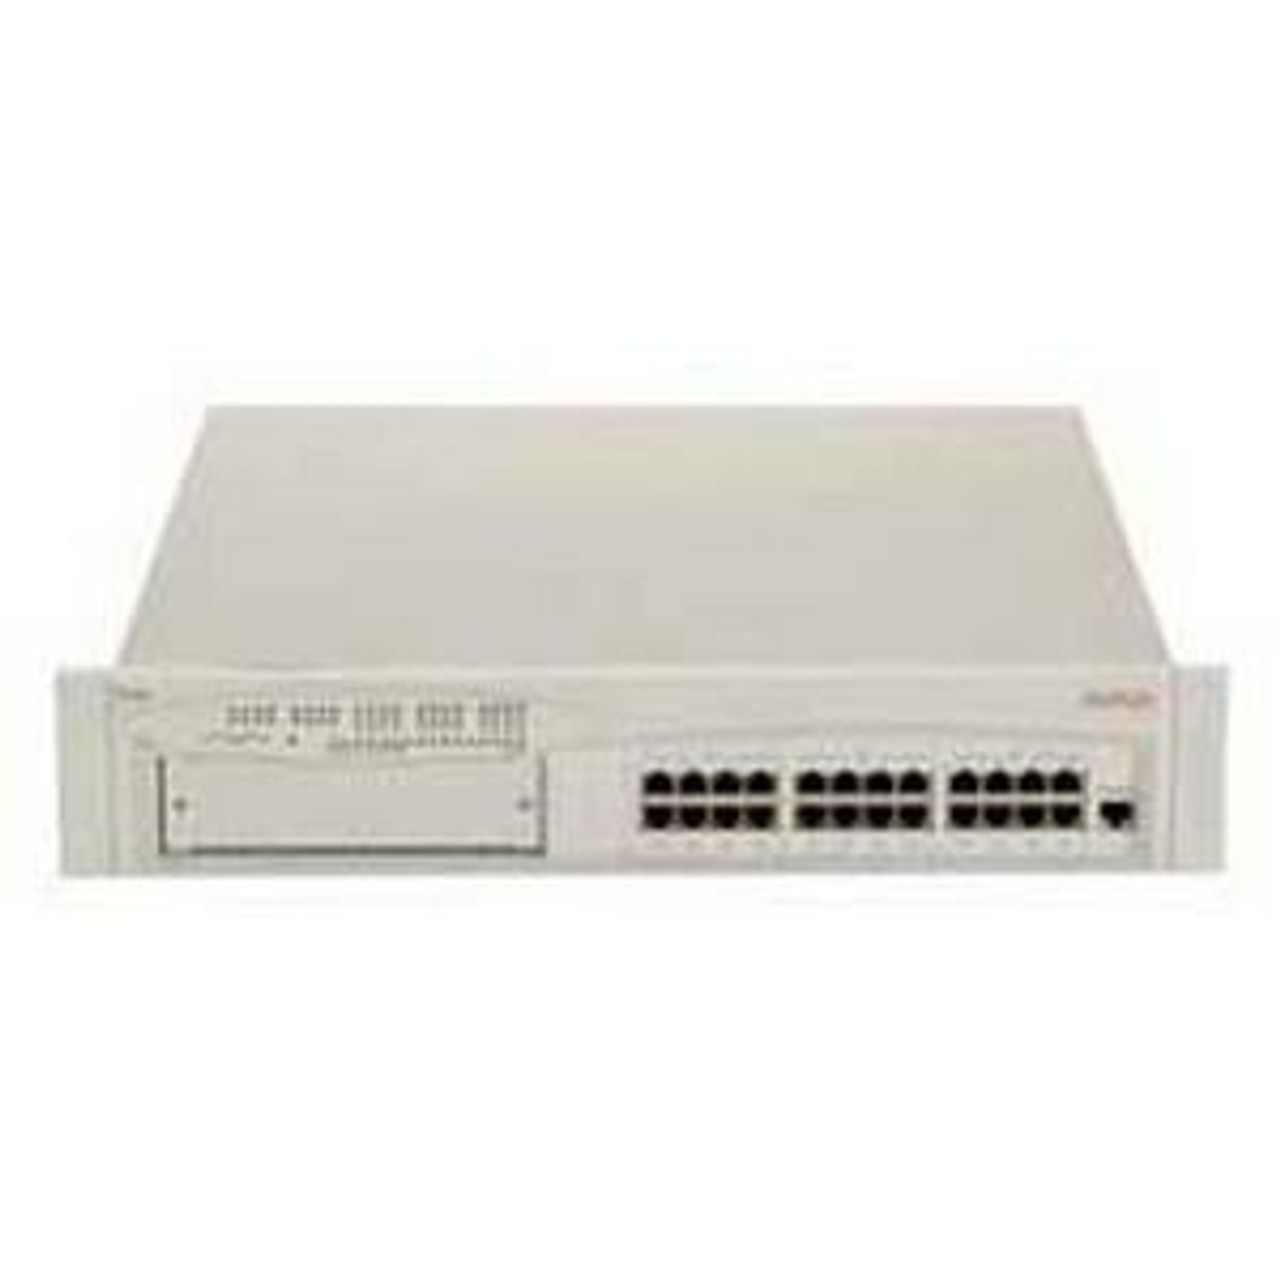 108873233 Avaya P133G2 Ethernet Switch 24 x 10/100Base-TX LAN (Refurbished)